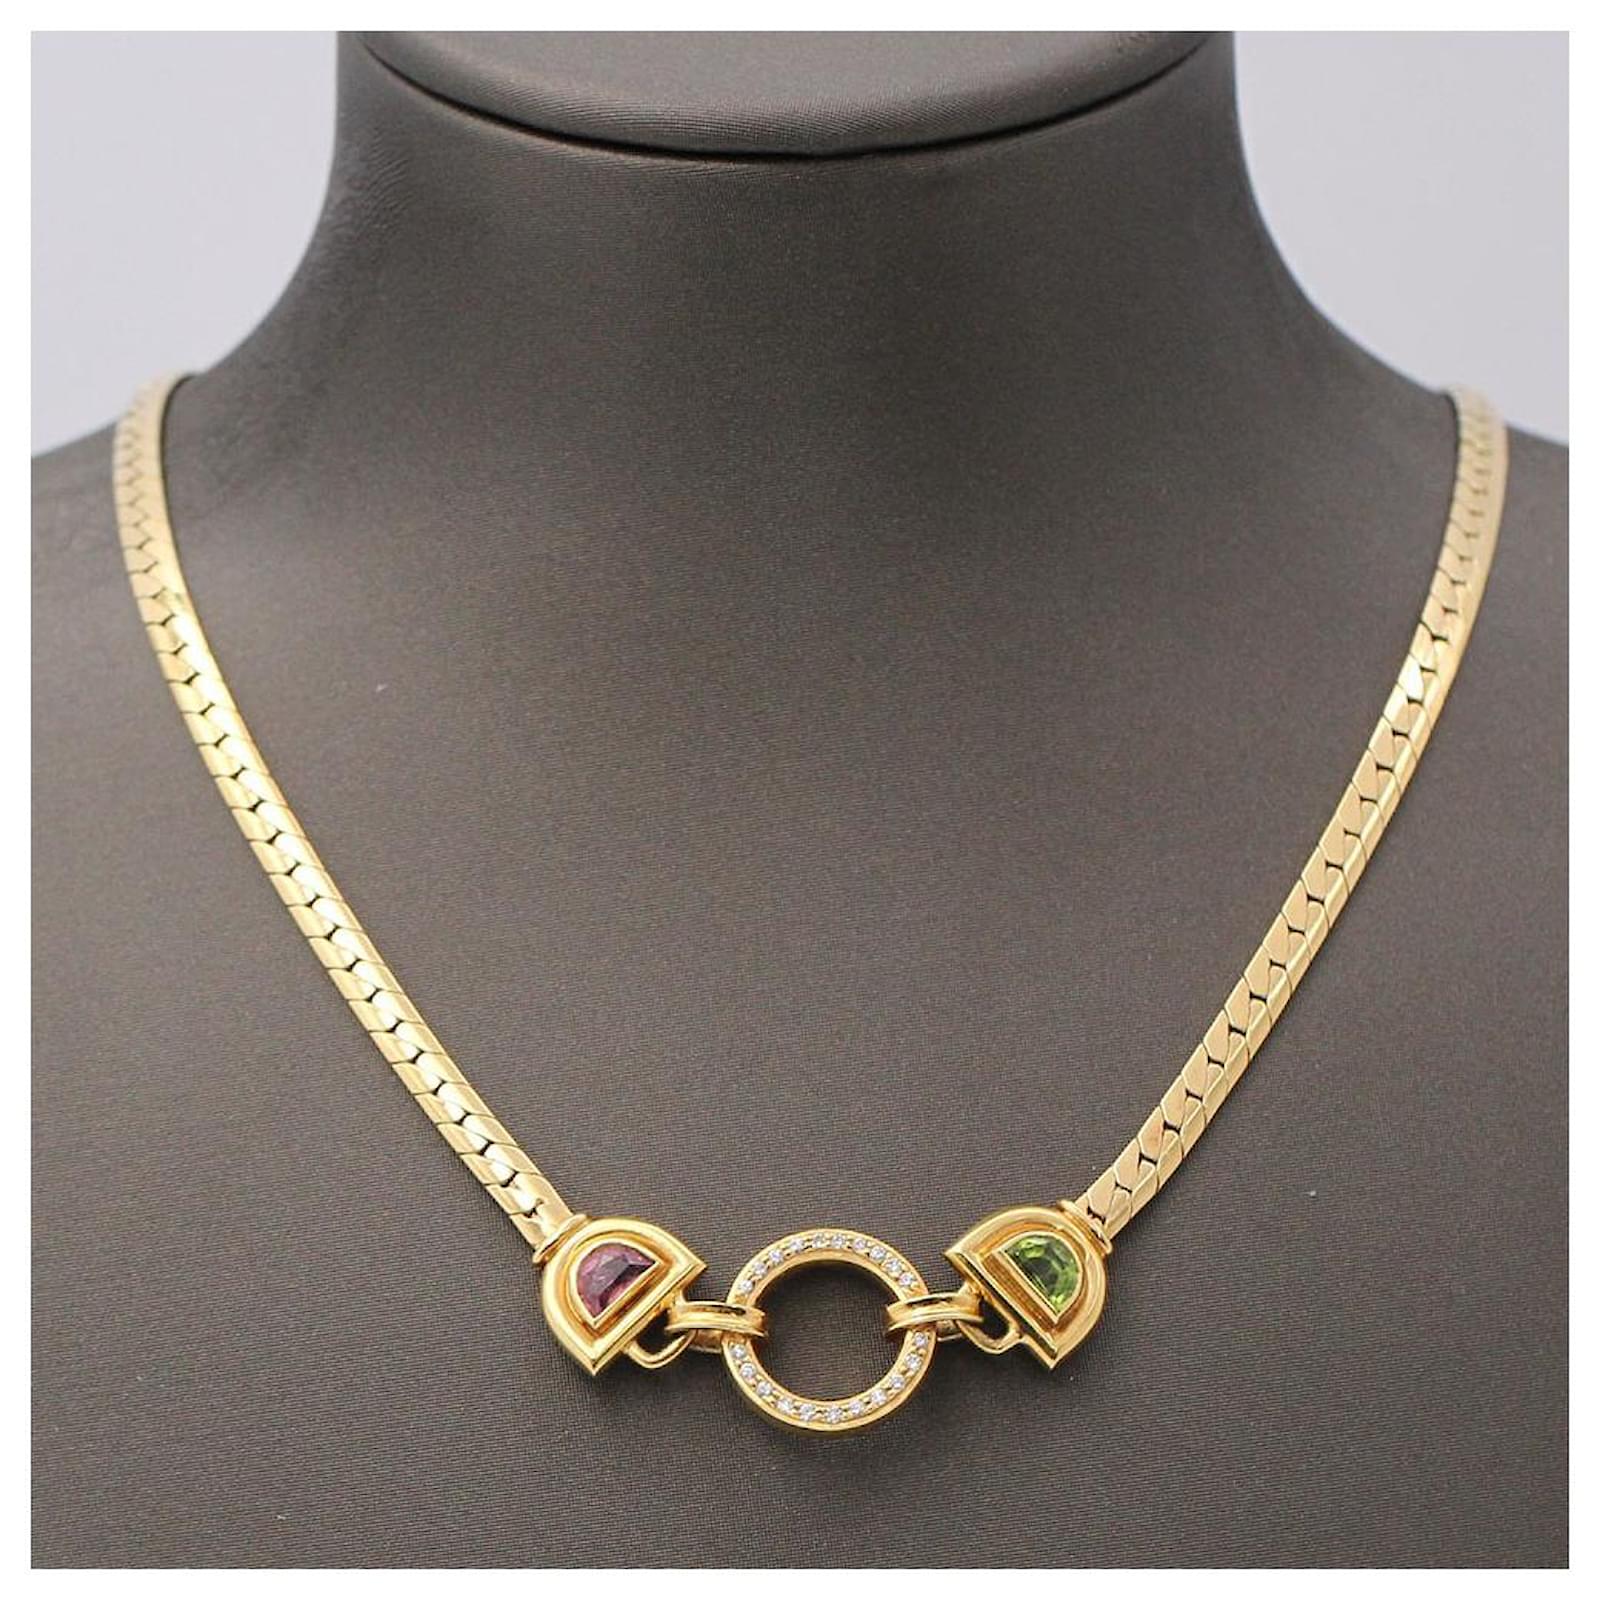 Fine Necklaces - Delicate Chains, Pendants & Chokers | Catbird